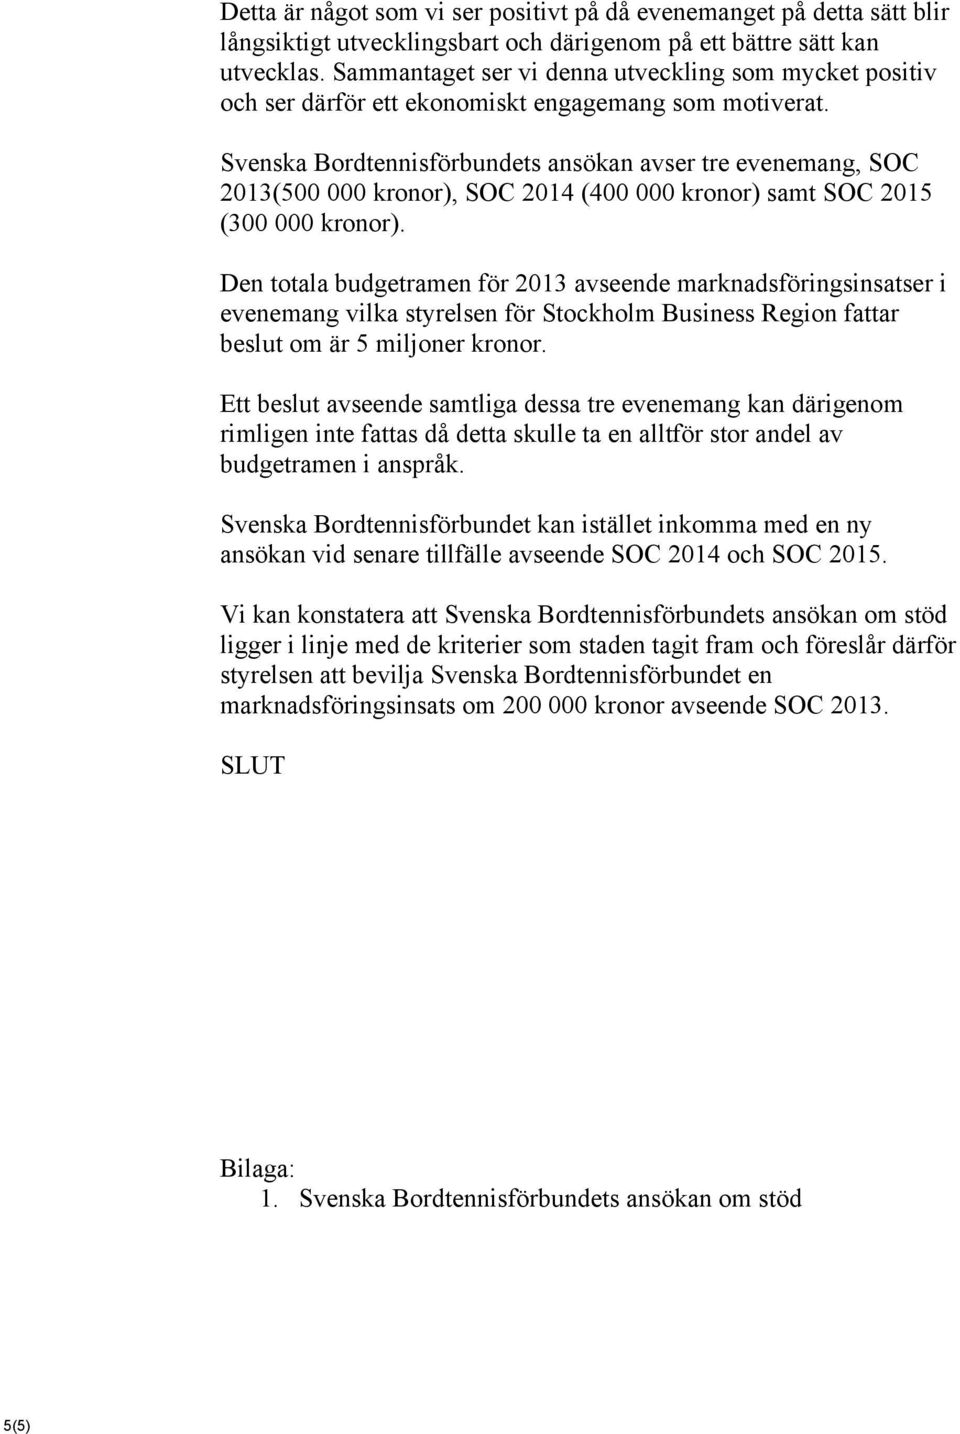 Svenska Bordtennisförbundets ansökan avser tre evenemang, SOC 2013(500 000 kronor), SOC 2014 (400 000 kronor) samt SOC 2015 (300 000 kronor).